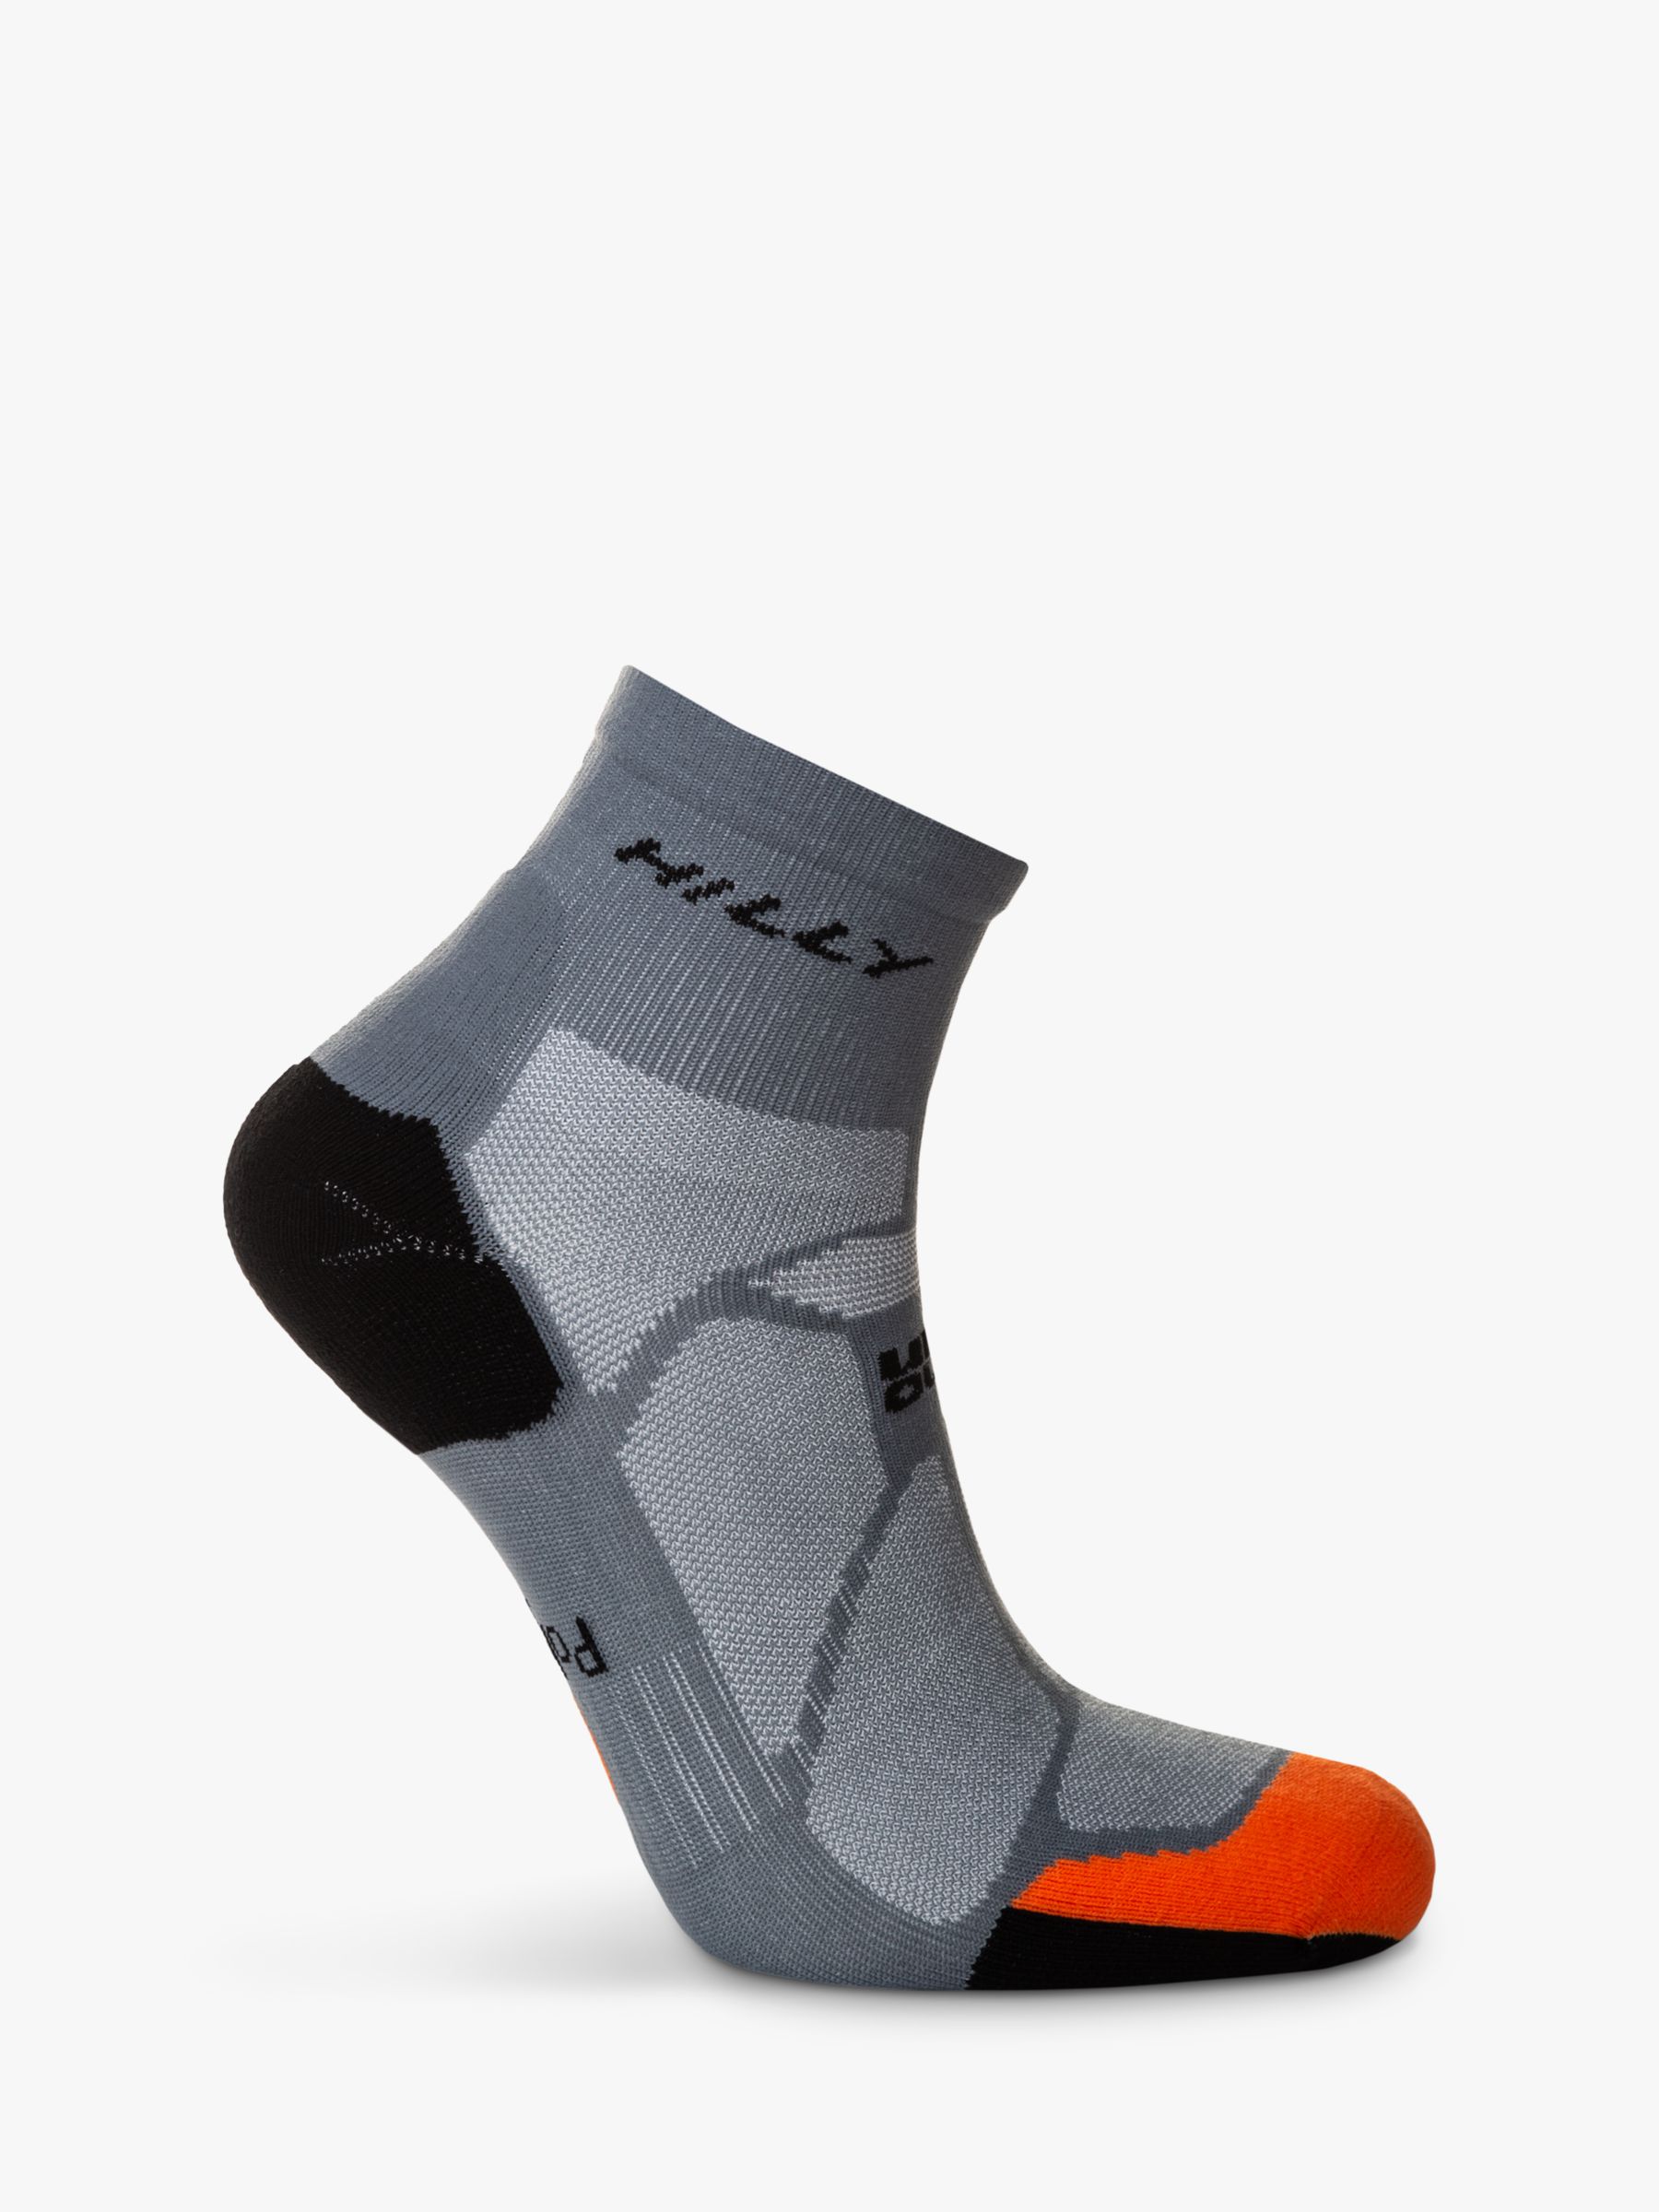 Hilly Marathon Fresh Ankle Running Socks, Granite/Orange, S